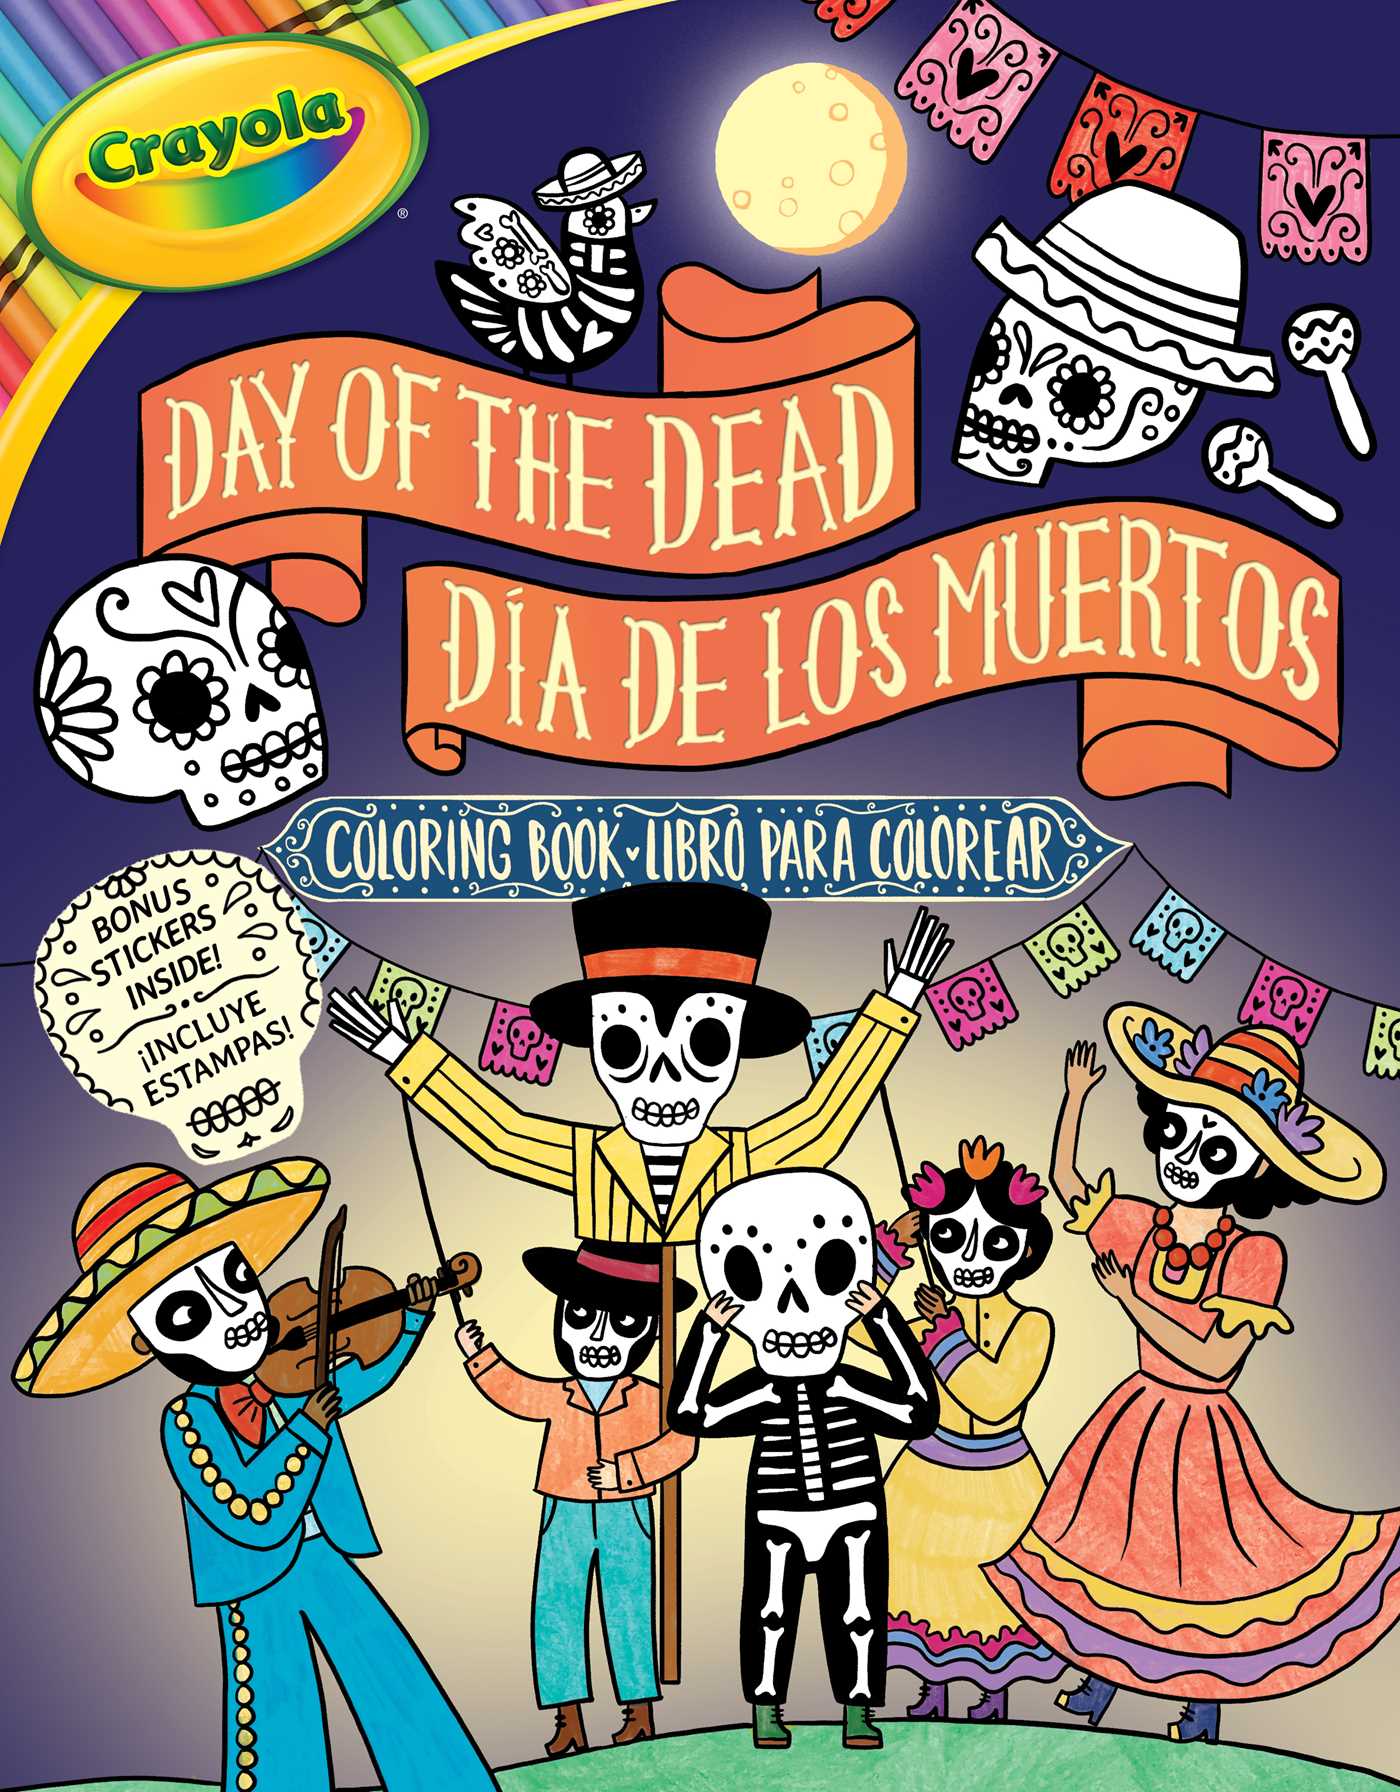 Crayola Day of the Dead/Día de los Muertos Coloring Book